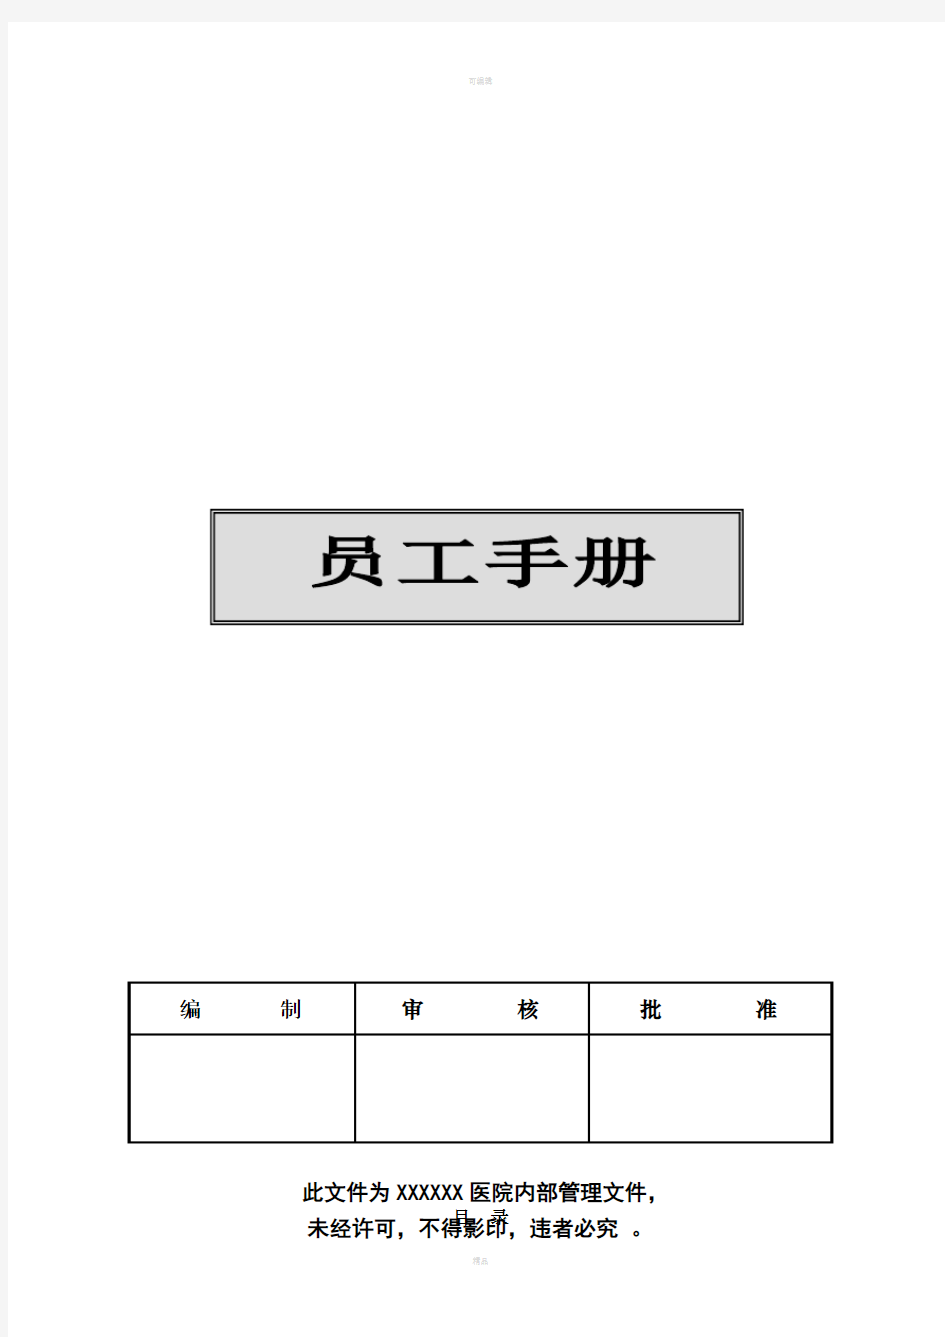 员工手册封面 (4)